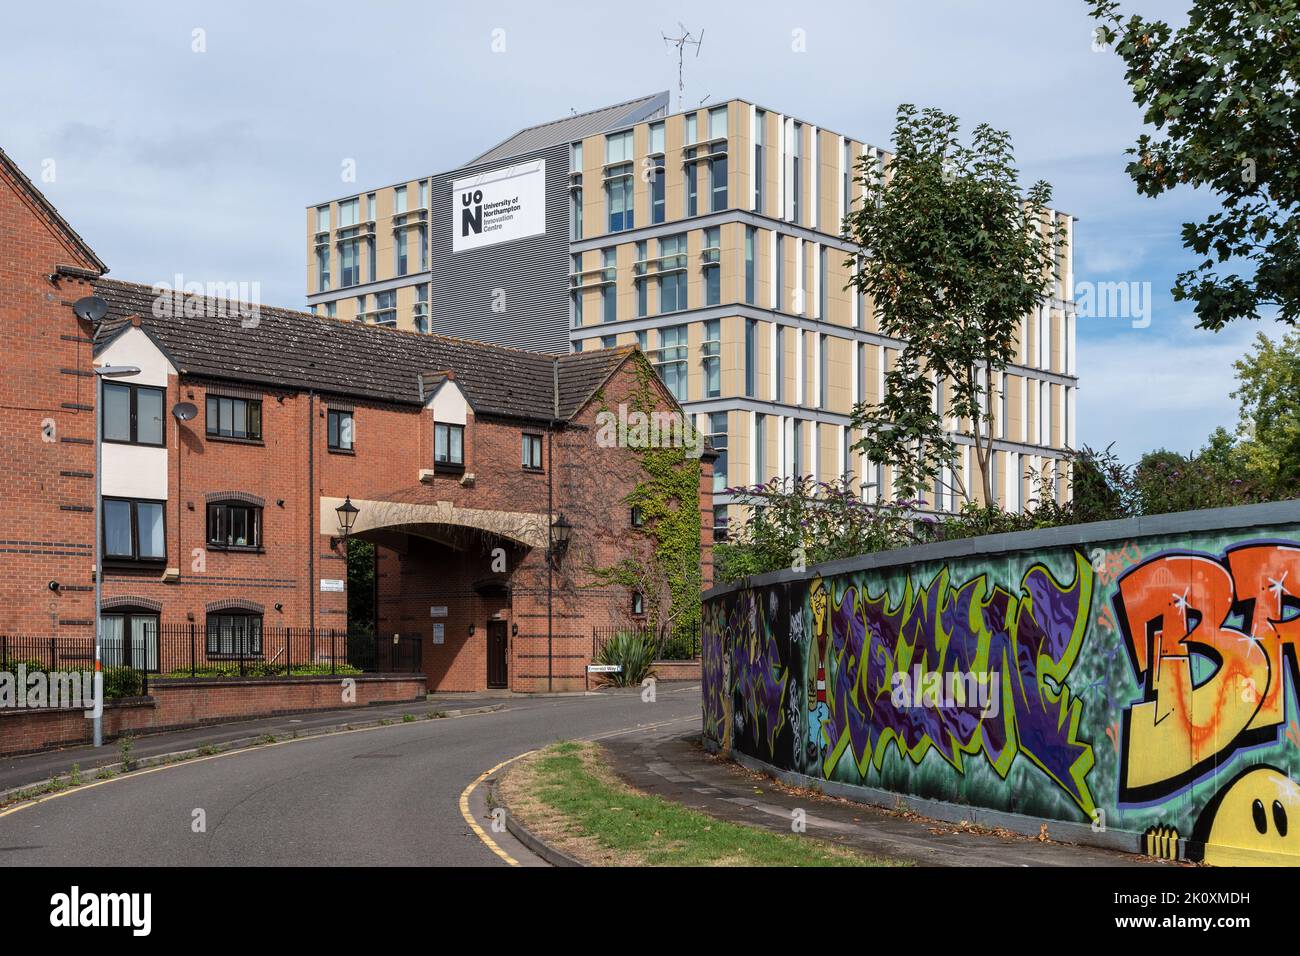 The innovation Center, Northampton, Royaume-Uni. Fait partie de l'Université de Northampton, cette vue montre une installation d'art urbain au premier plan Banque D'Images